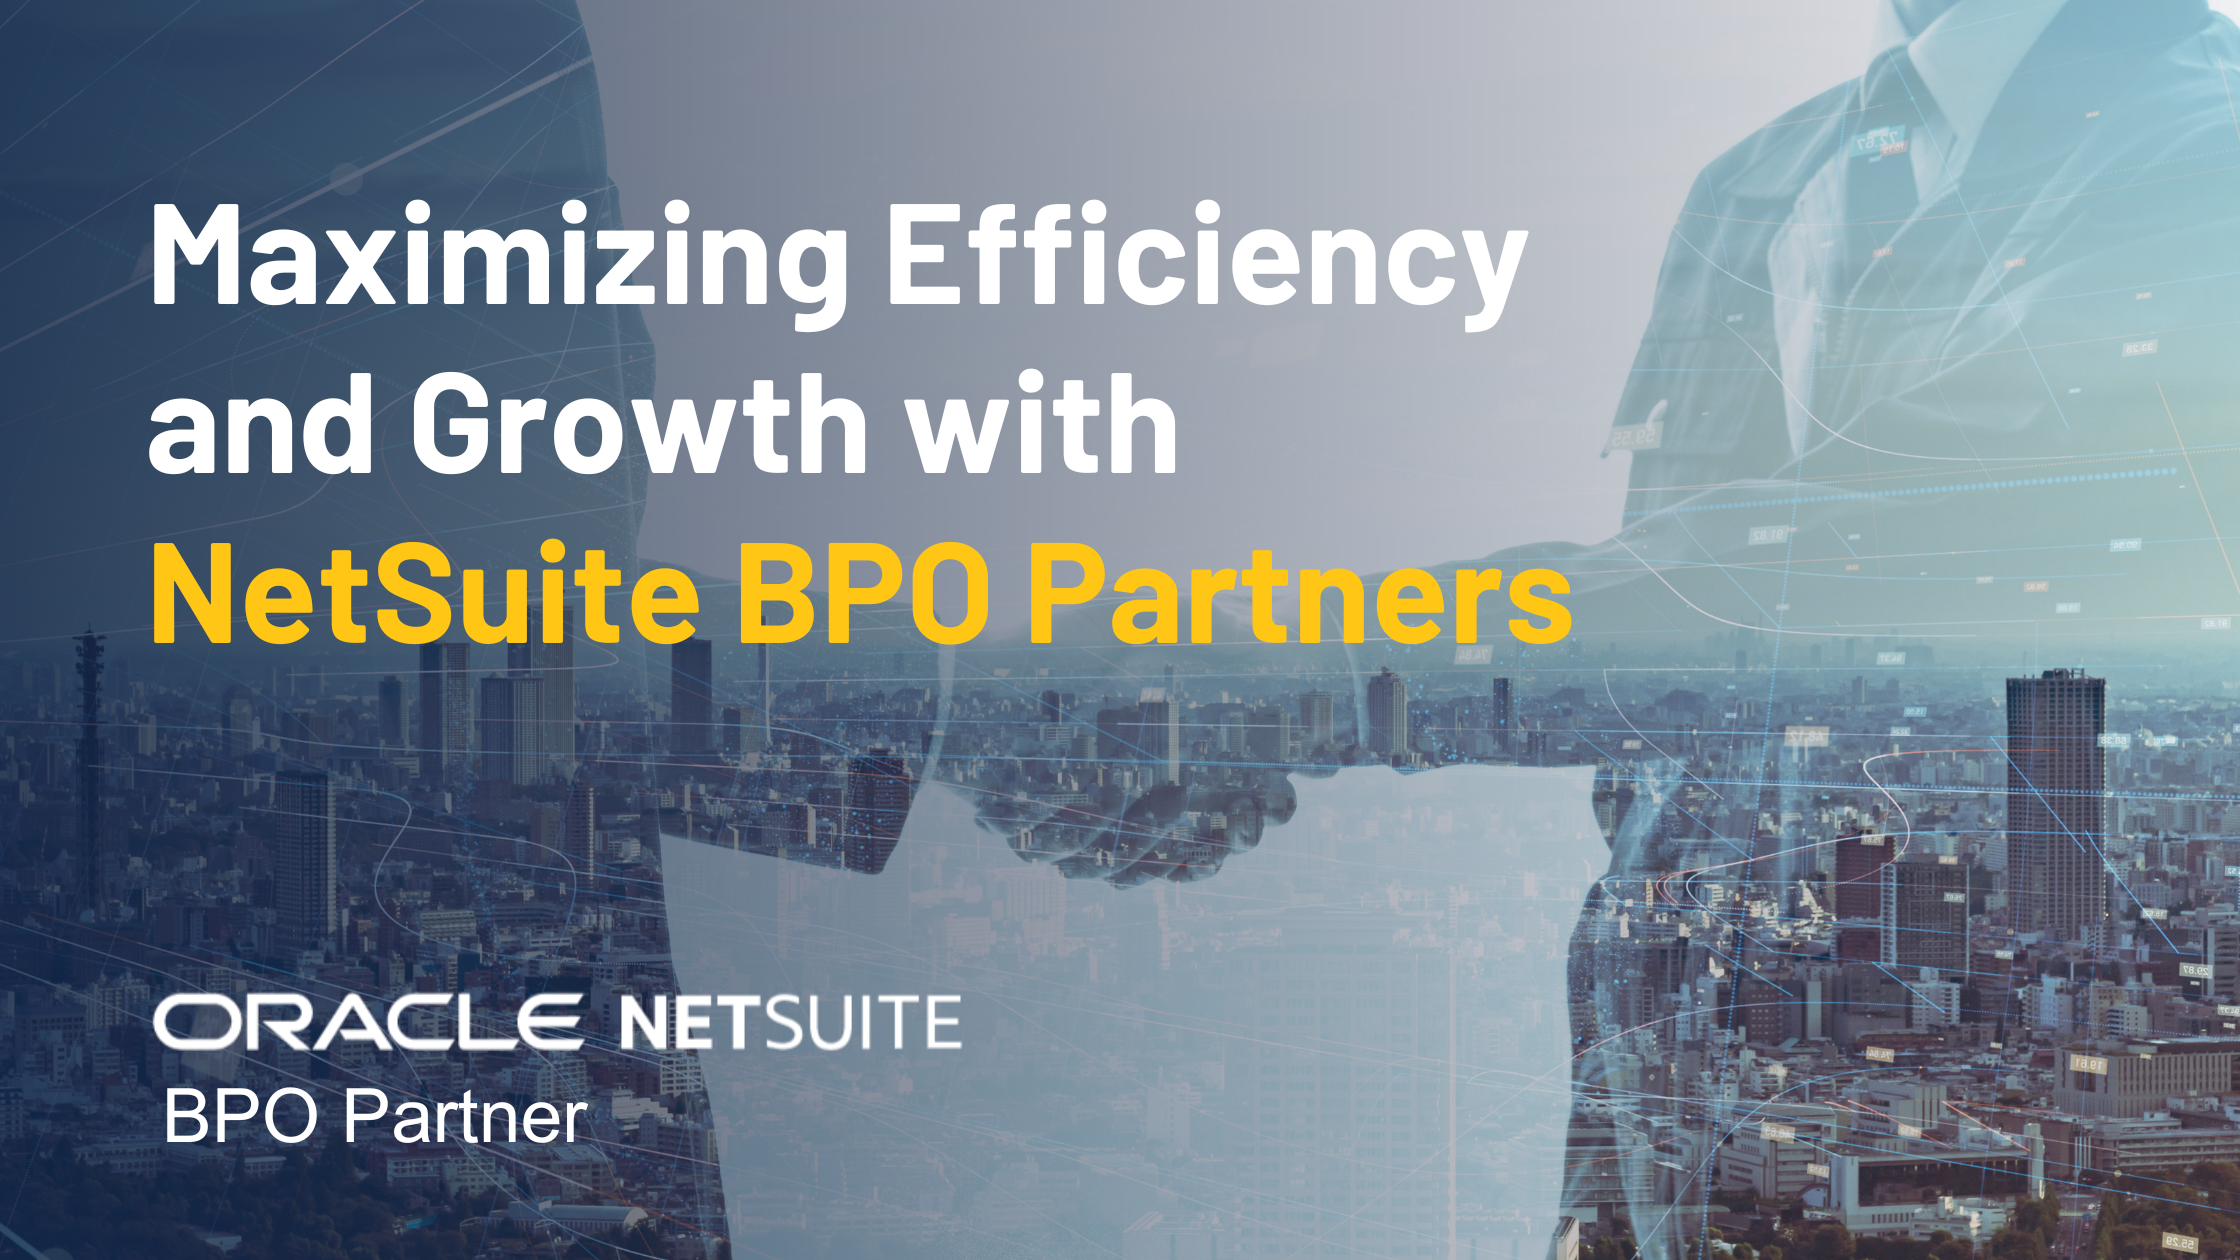 NetSuite BPO Partner